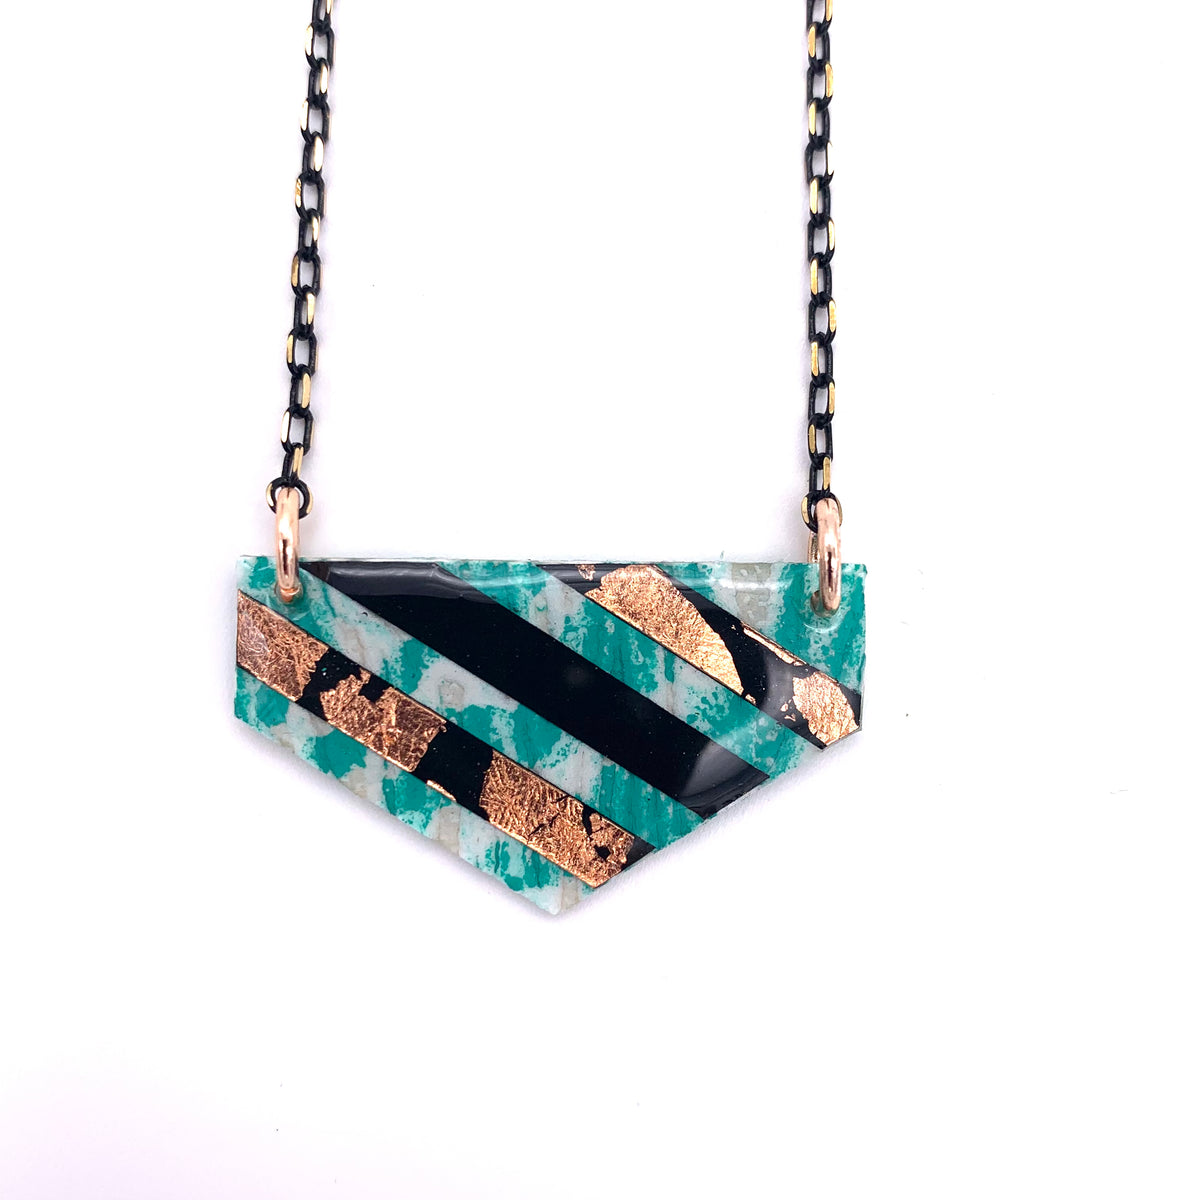 Ralston batik textile necklace in mint/rose-gold/black